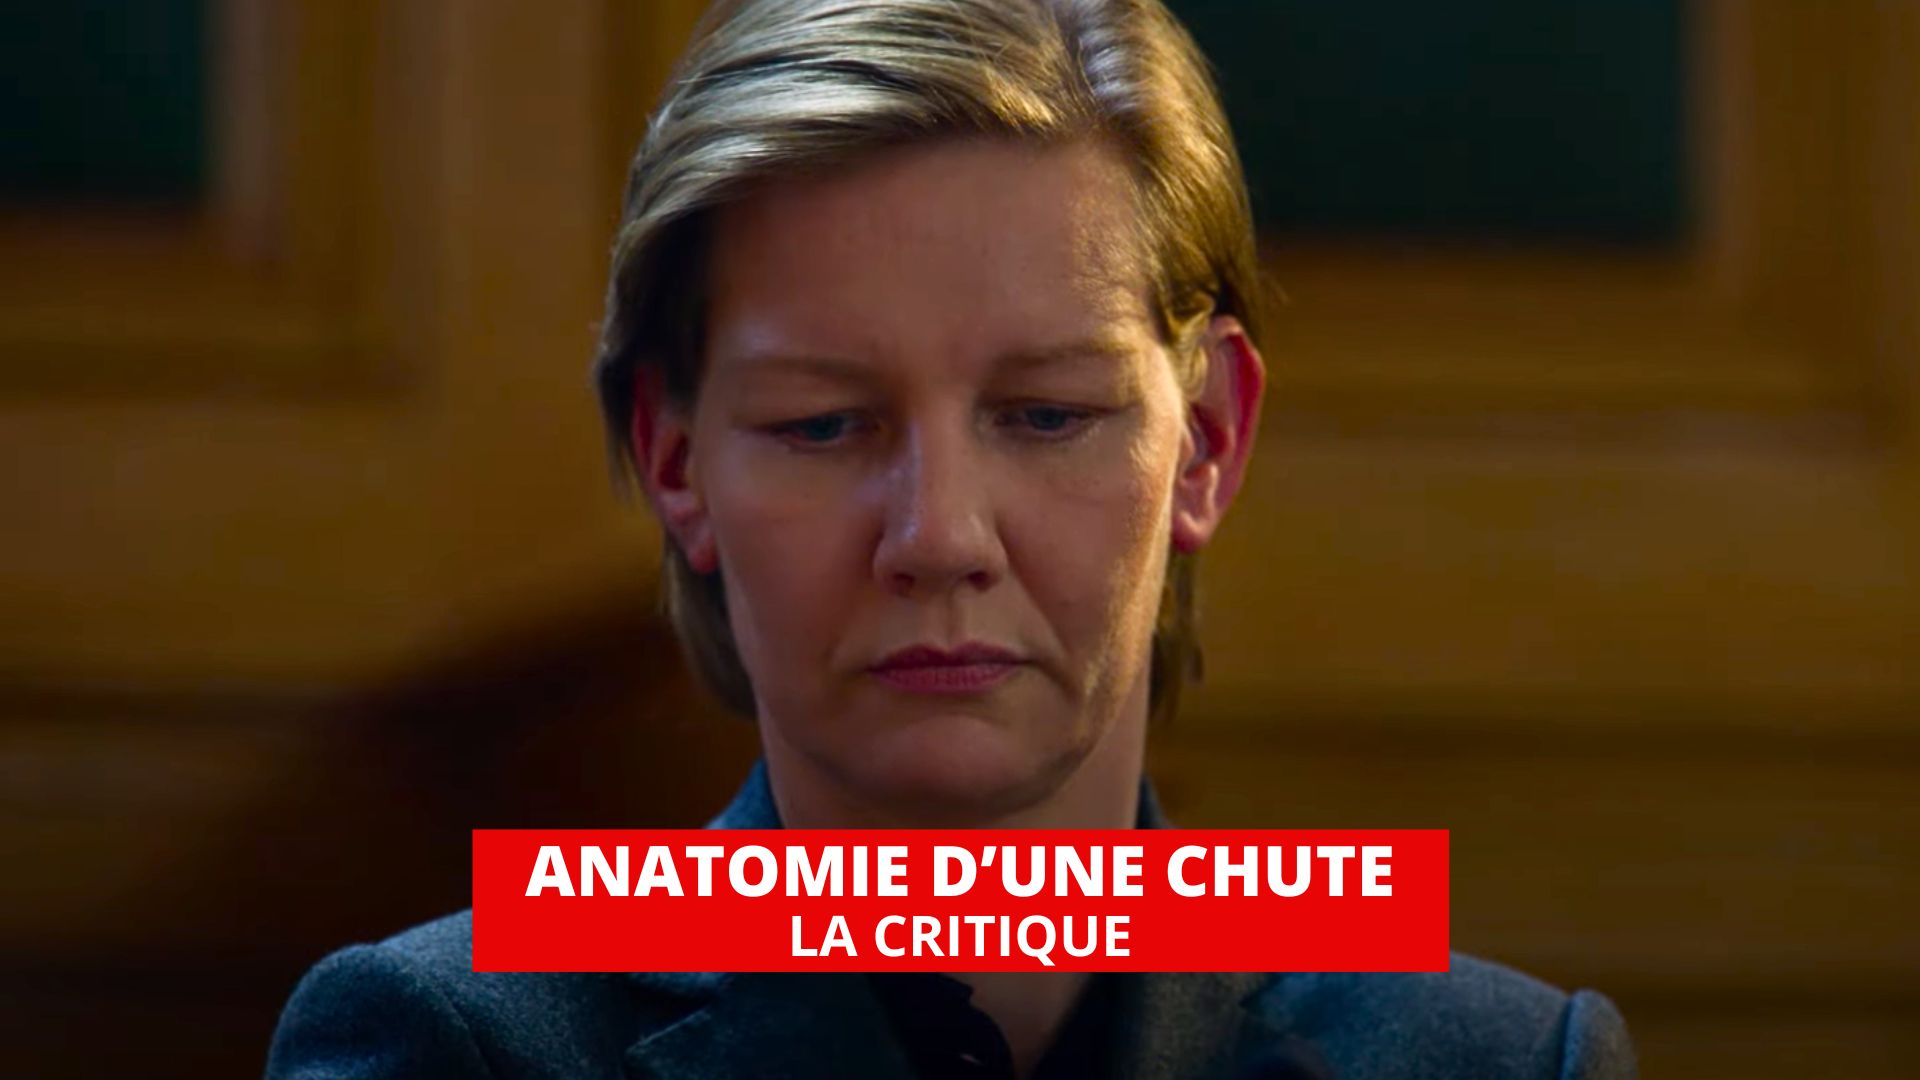 Anatomie d'une chute : un très grand film de procès signé Justine Triet